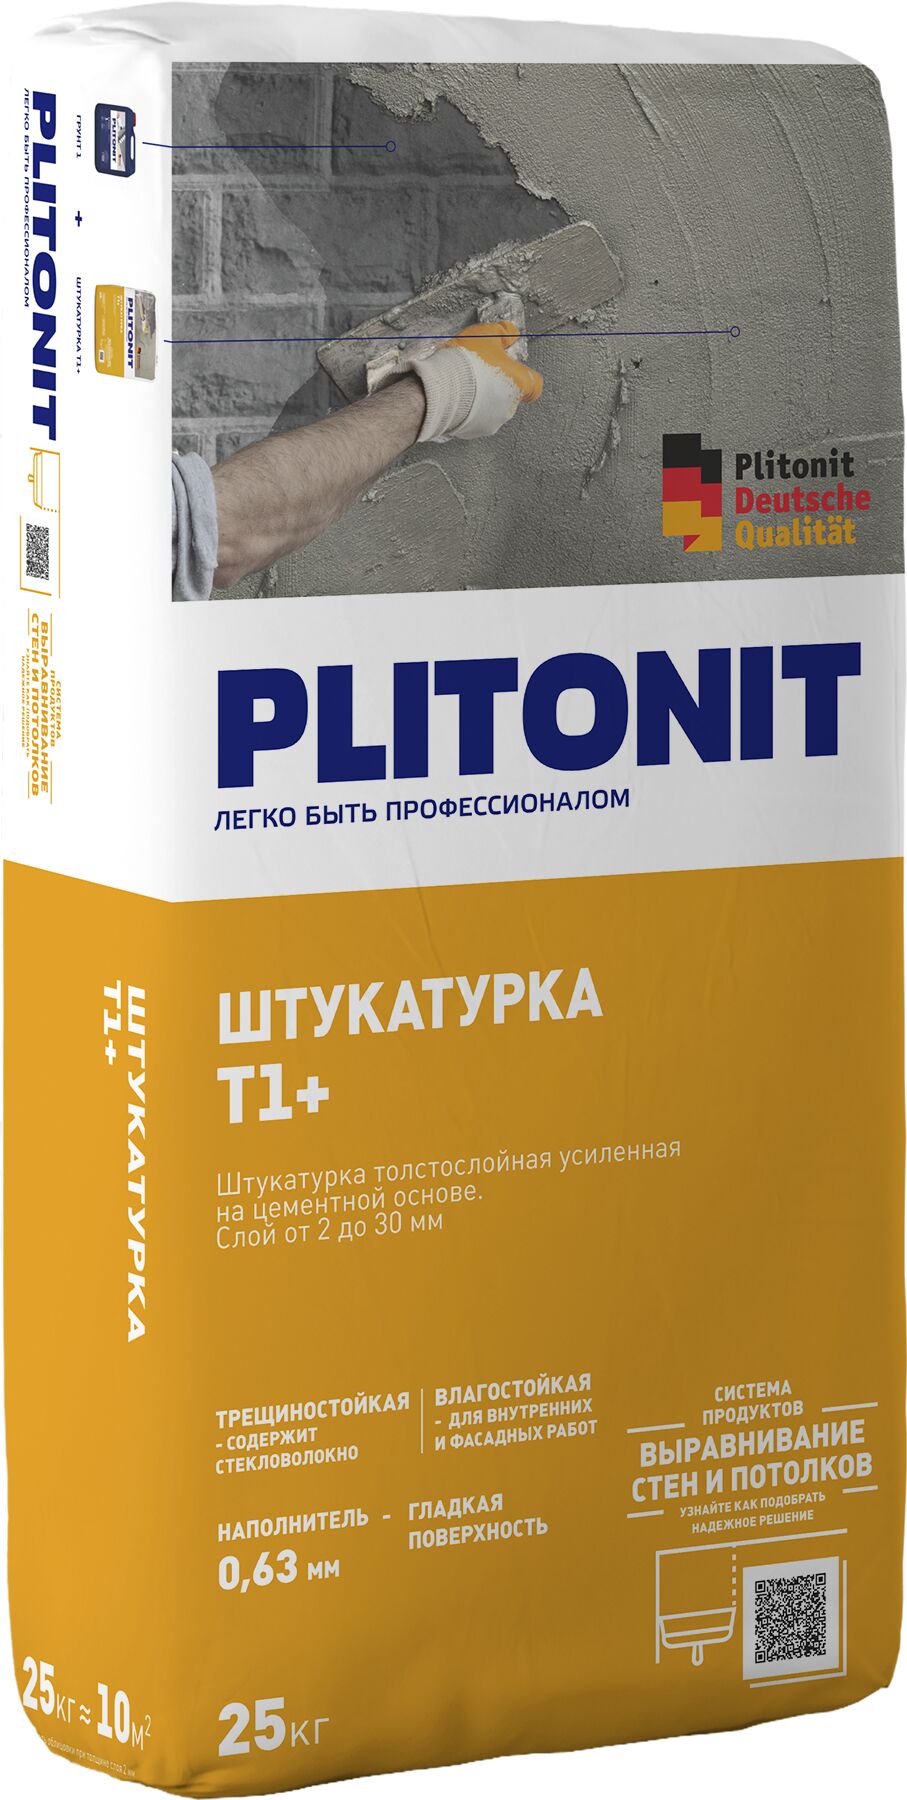 PLITONIT Т1+ -25 штукатурка для наружных и внутренних работ с армирующими волокнами